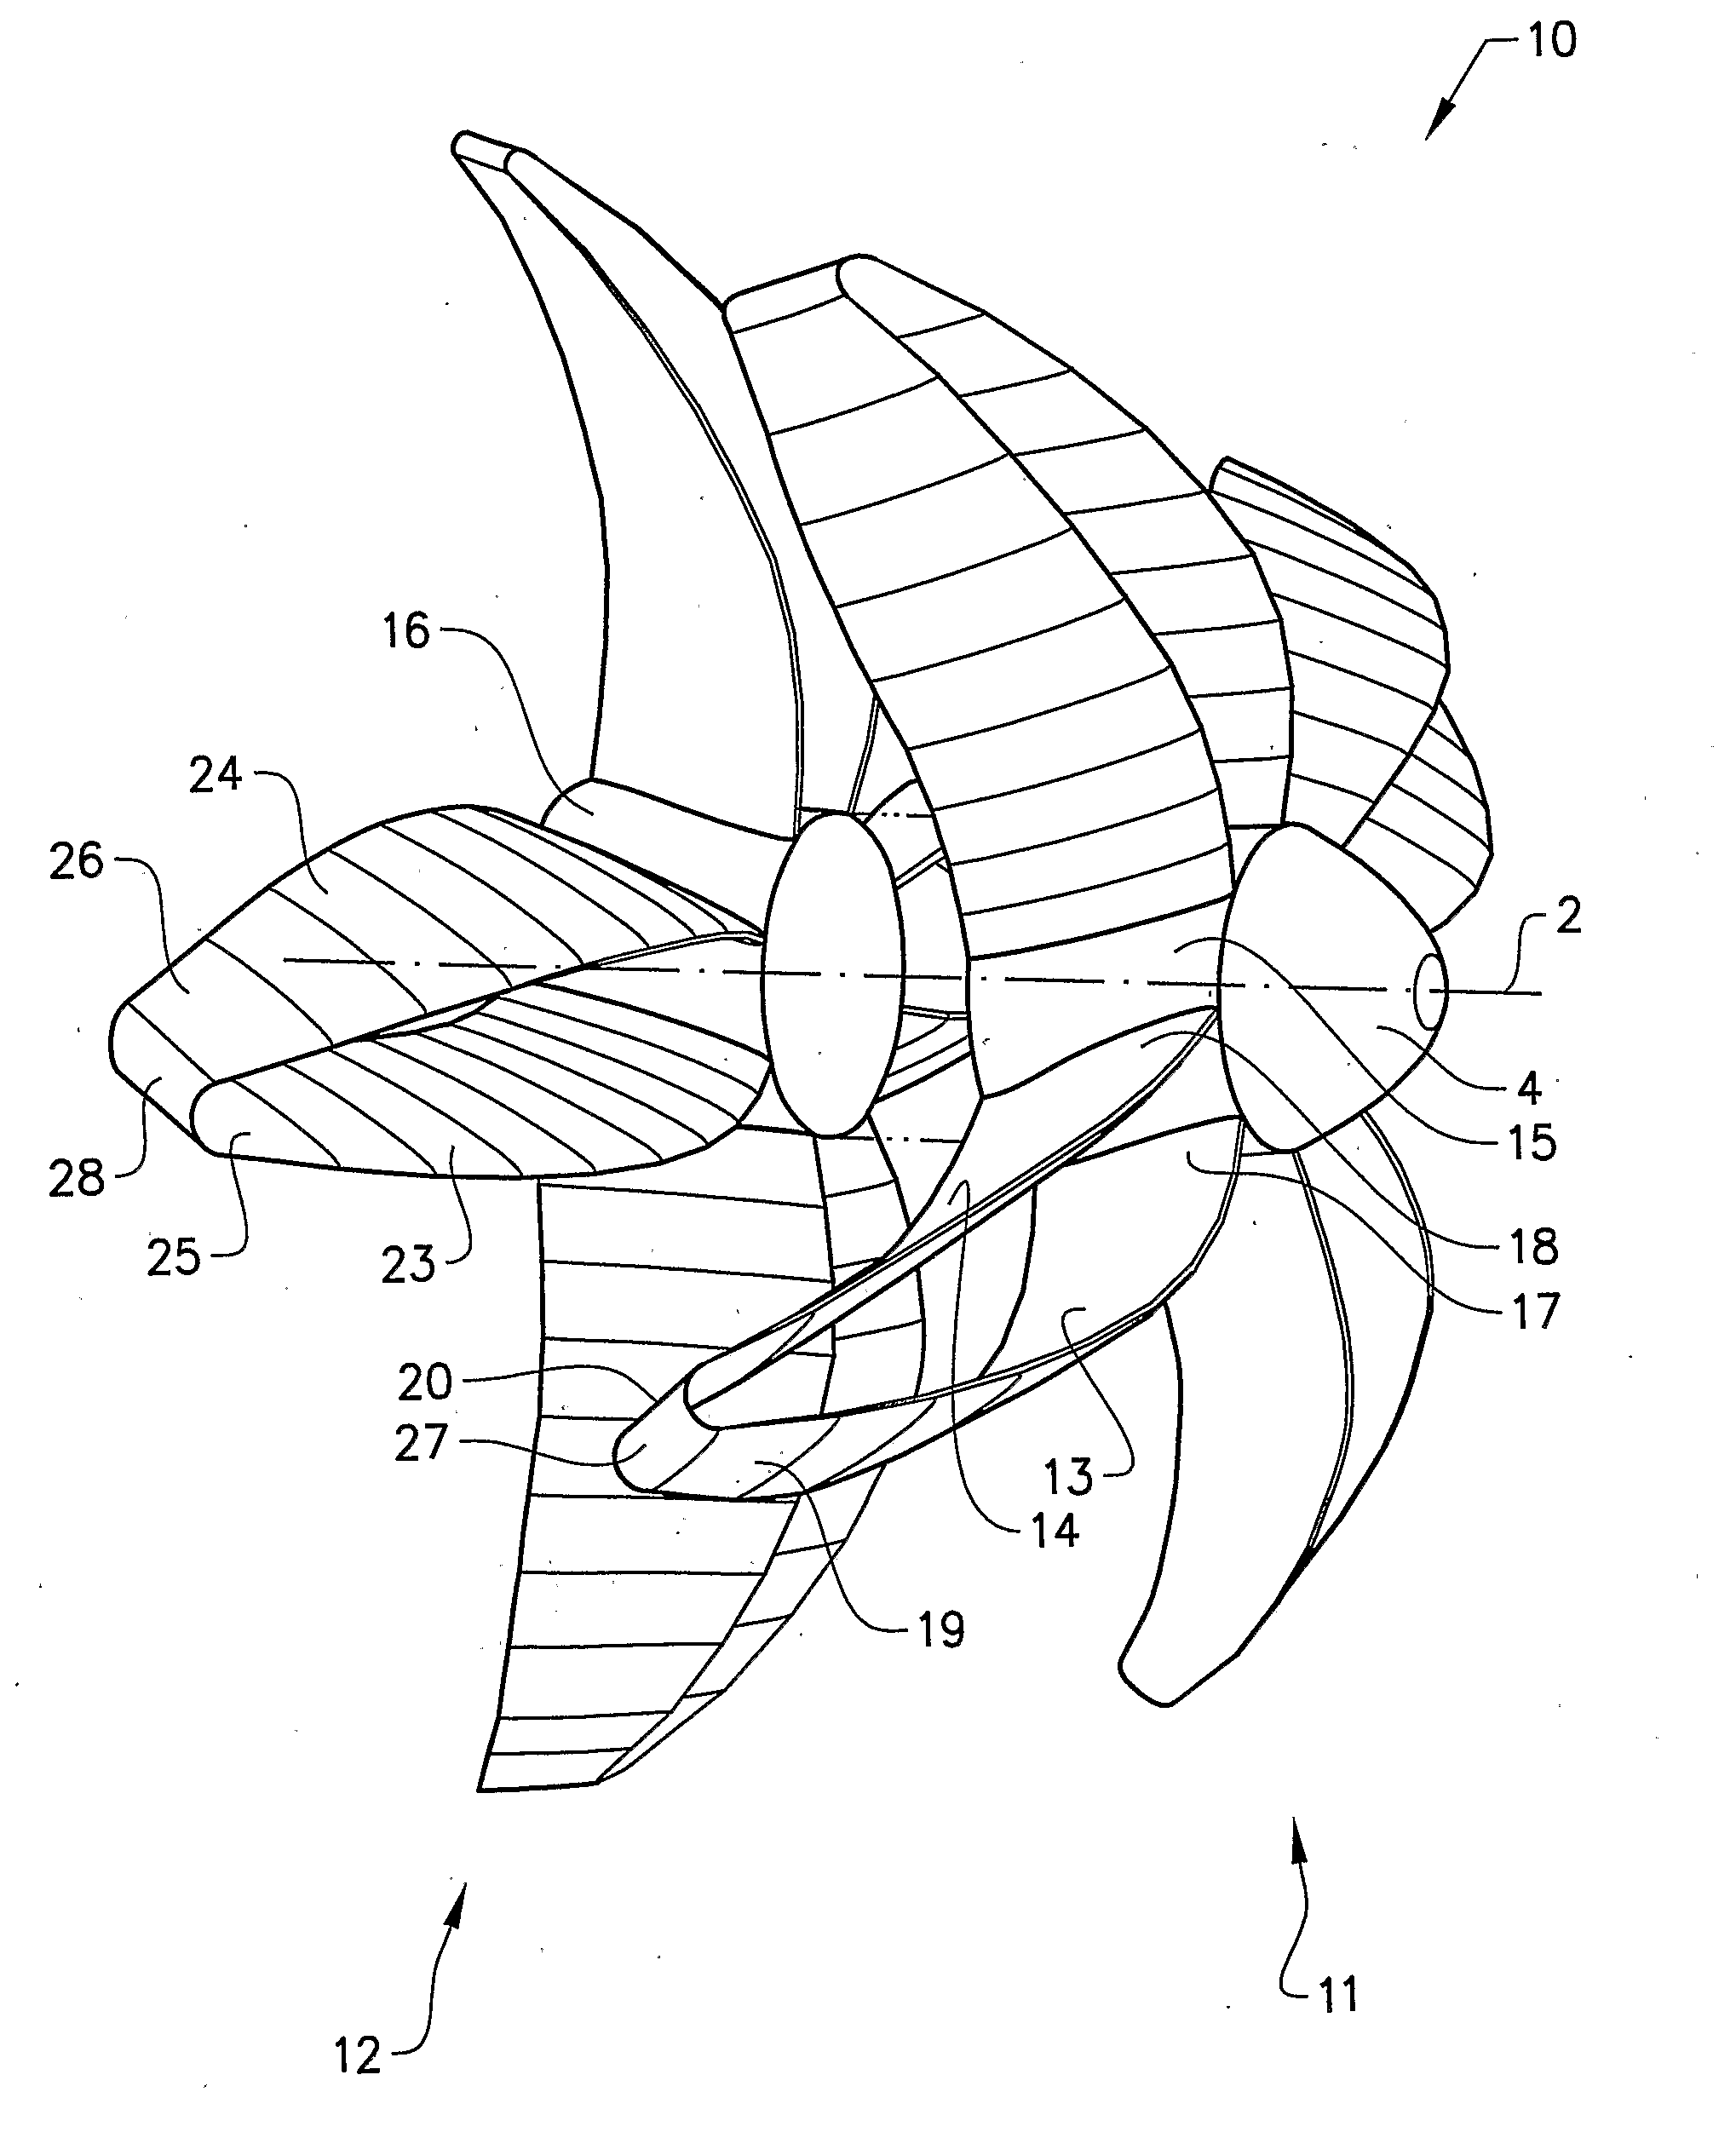 Air propeller arrangement and aircraft